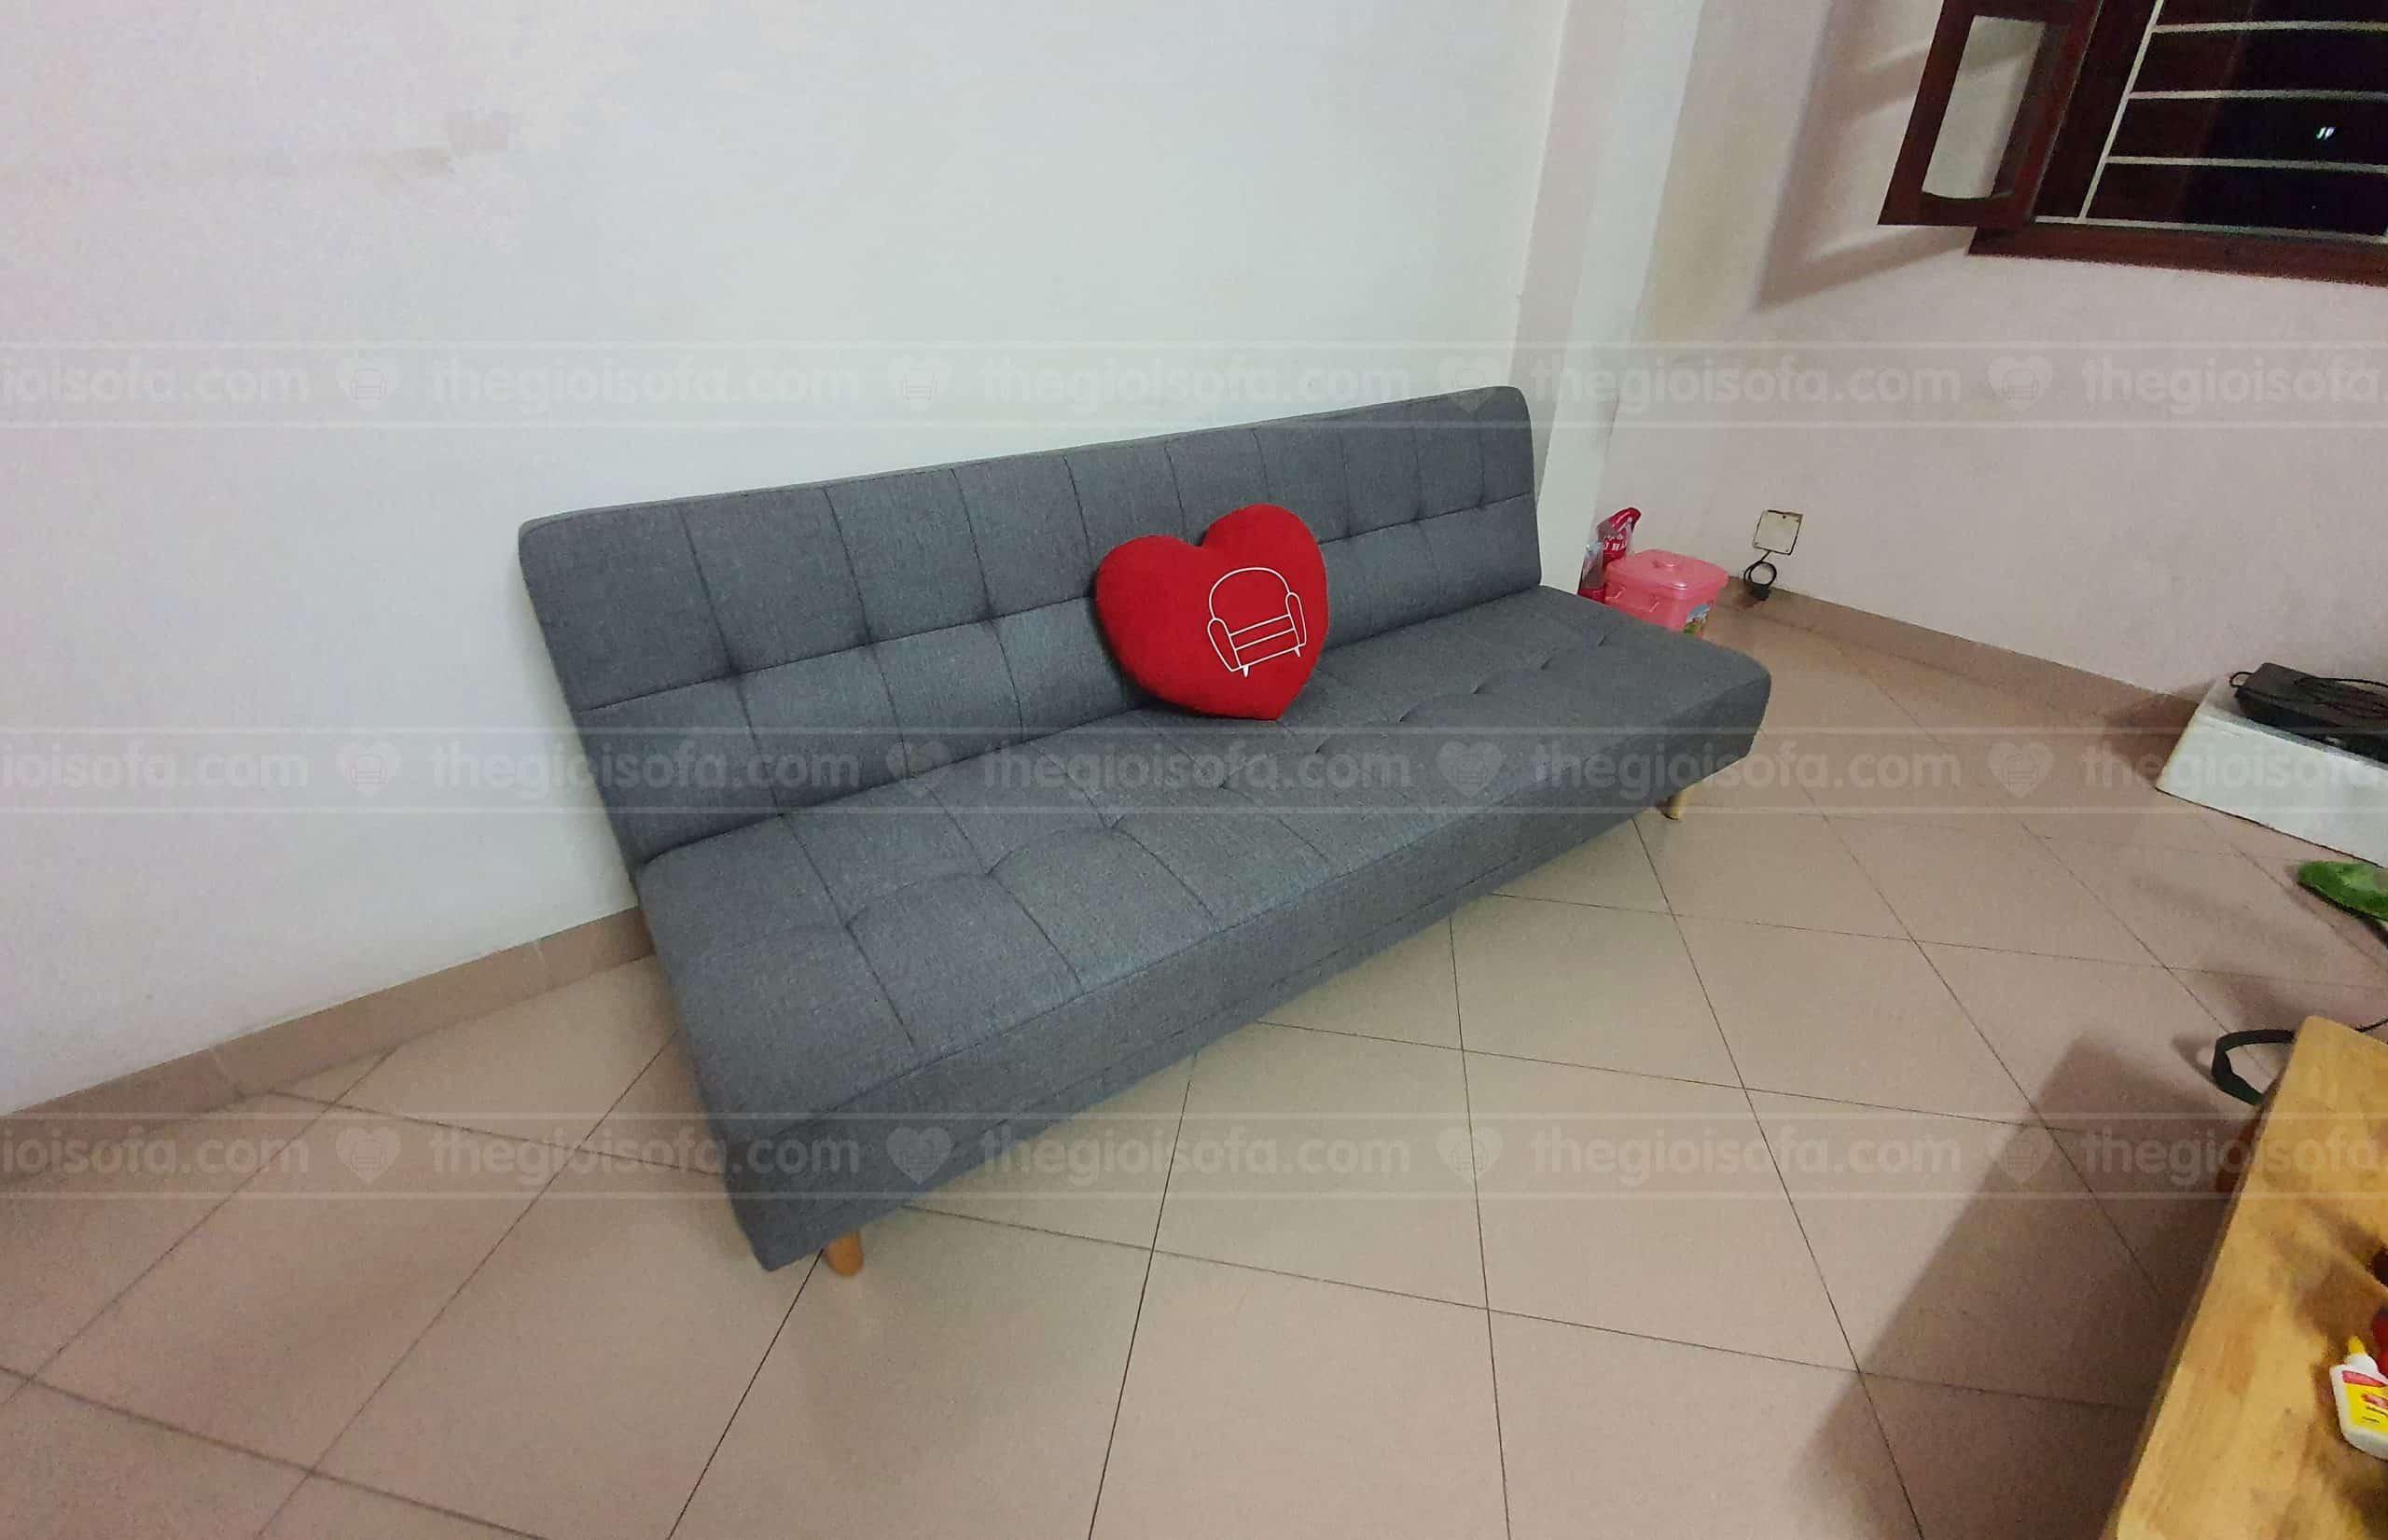 Giao hàng sofa giường giá rẻ Sofaland Vera Grey cho anh Minh tại Phạm Ngọc Thạch – Quận Đống Đa